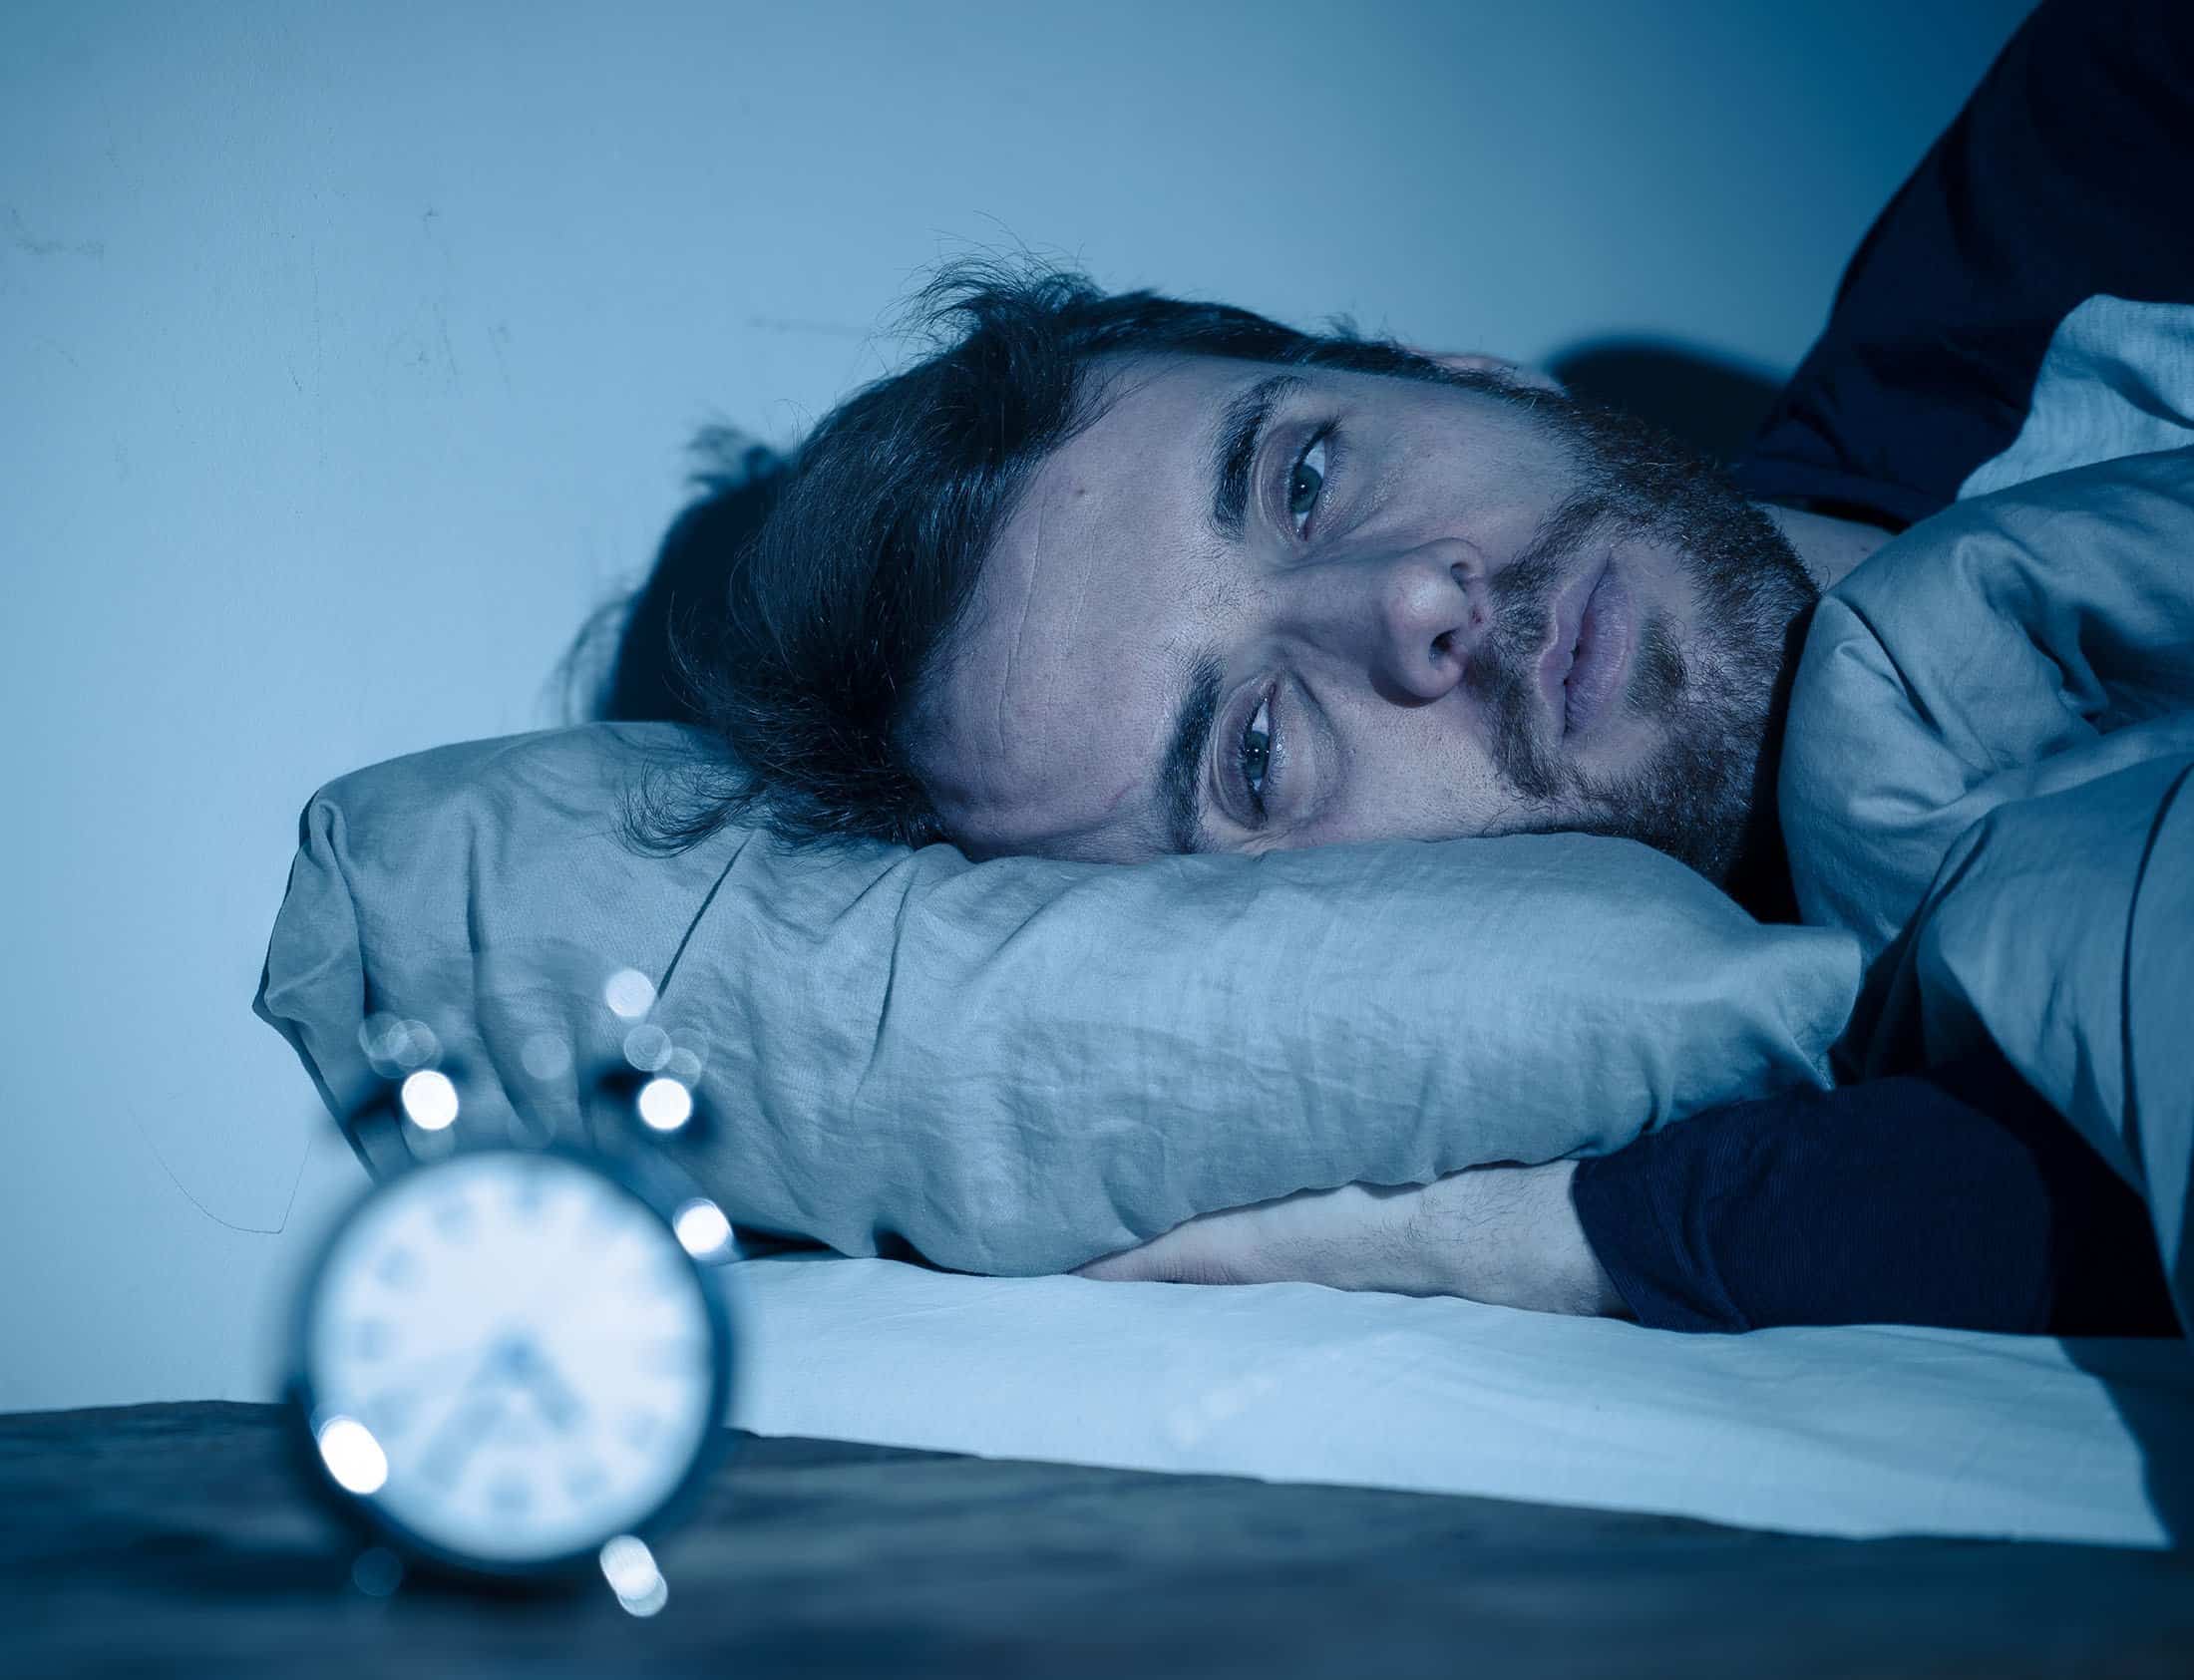 دليلك الكامل حول أسباب الأرق وقلة النوم وأعراضه وطرق علاجه